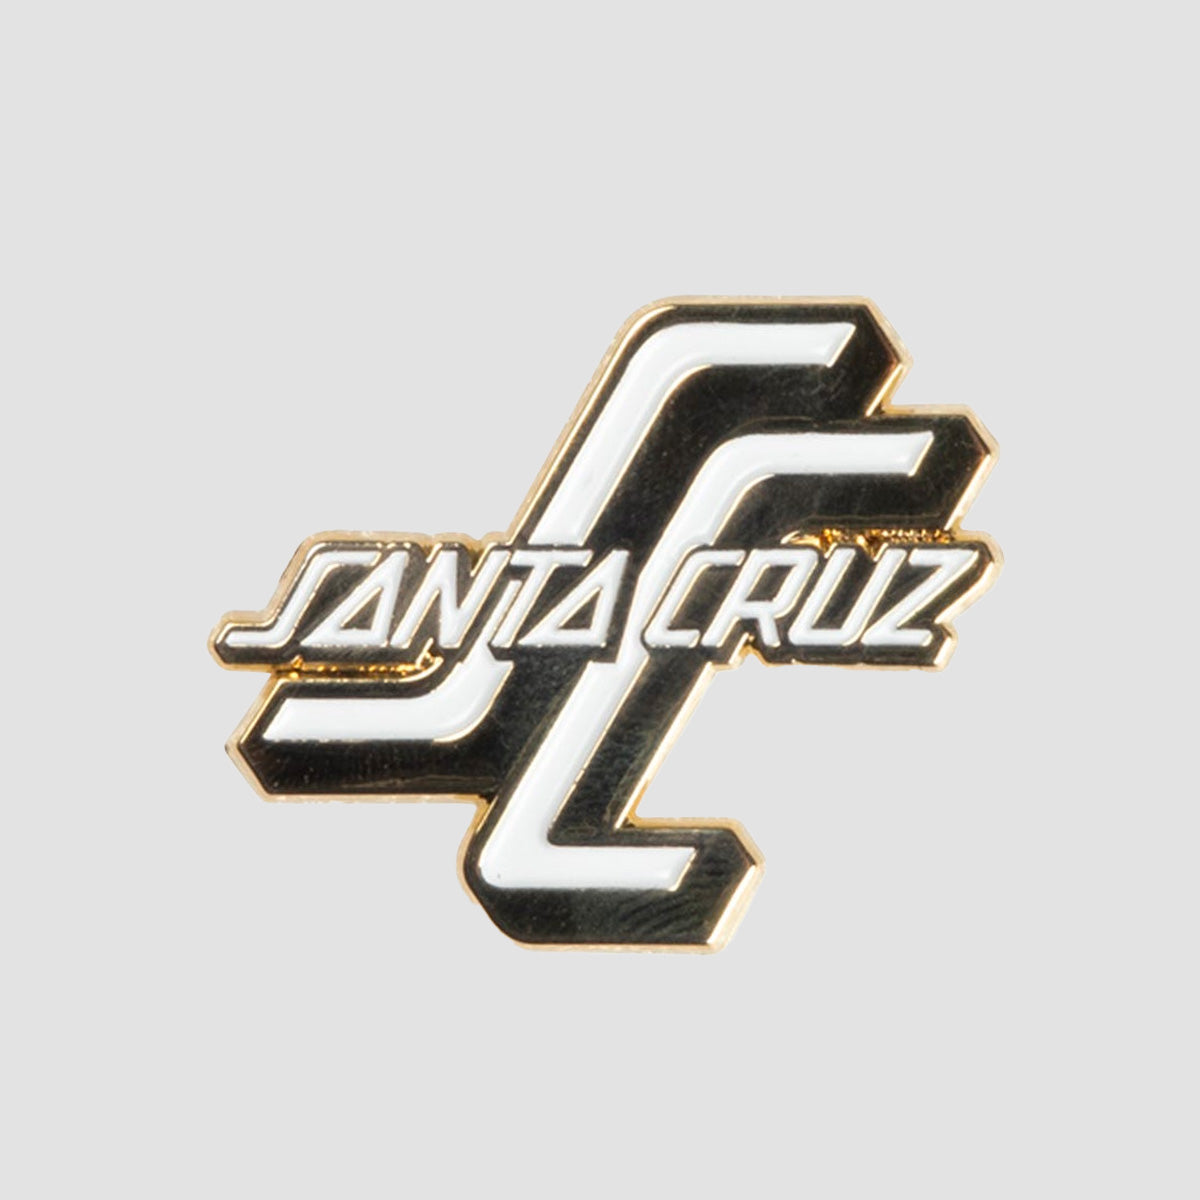 Santa Cruz OGSC Pin Badge Gold